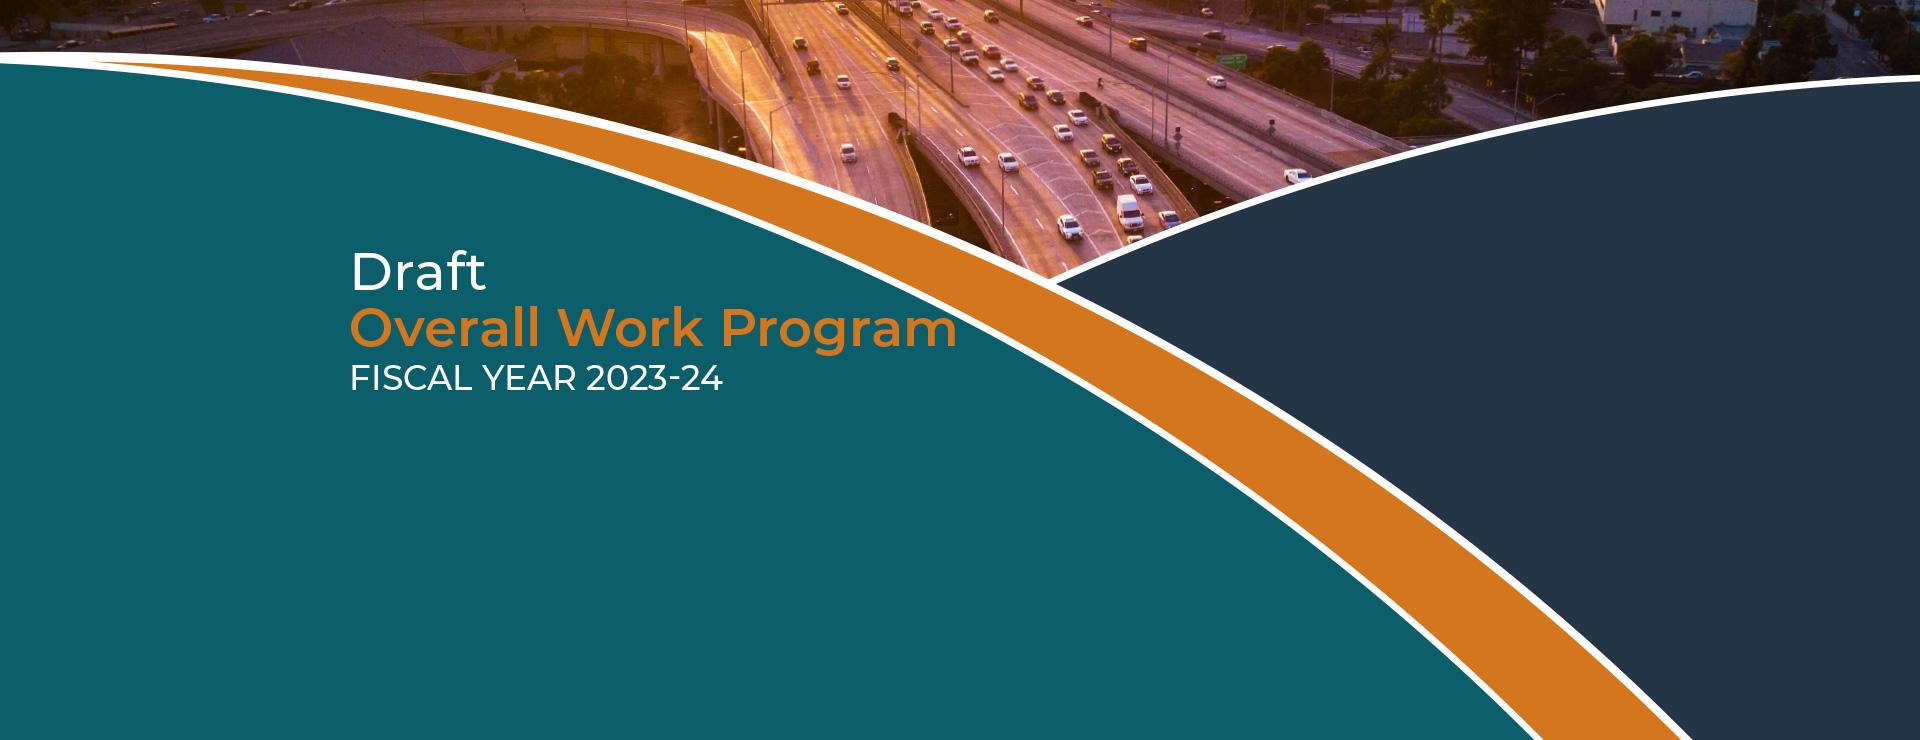 Draft FY 2023-24 Overall Work Program Banner